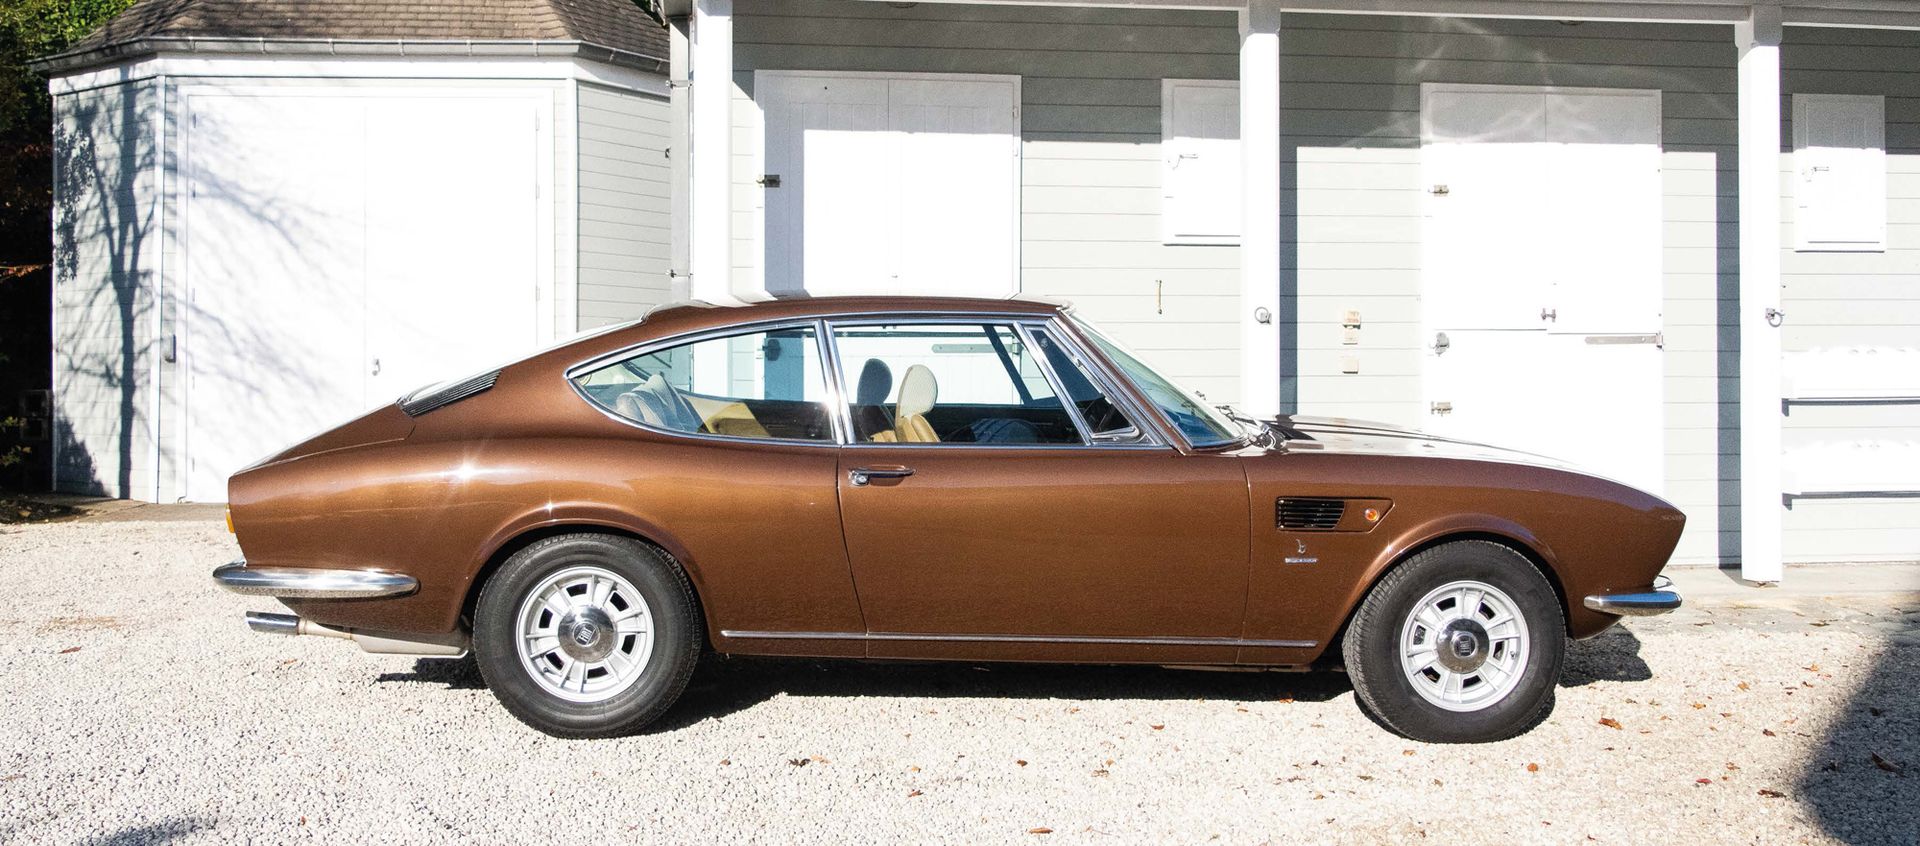 1973 FIAT Dino coupé 2400 
说明中提到的腐蚀点在目录出版后已经得到解决。



优雅的颜色方案

状况出色

价格上涨

比利时注册
&hellip;